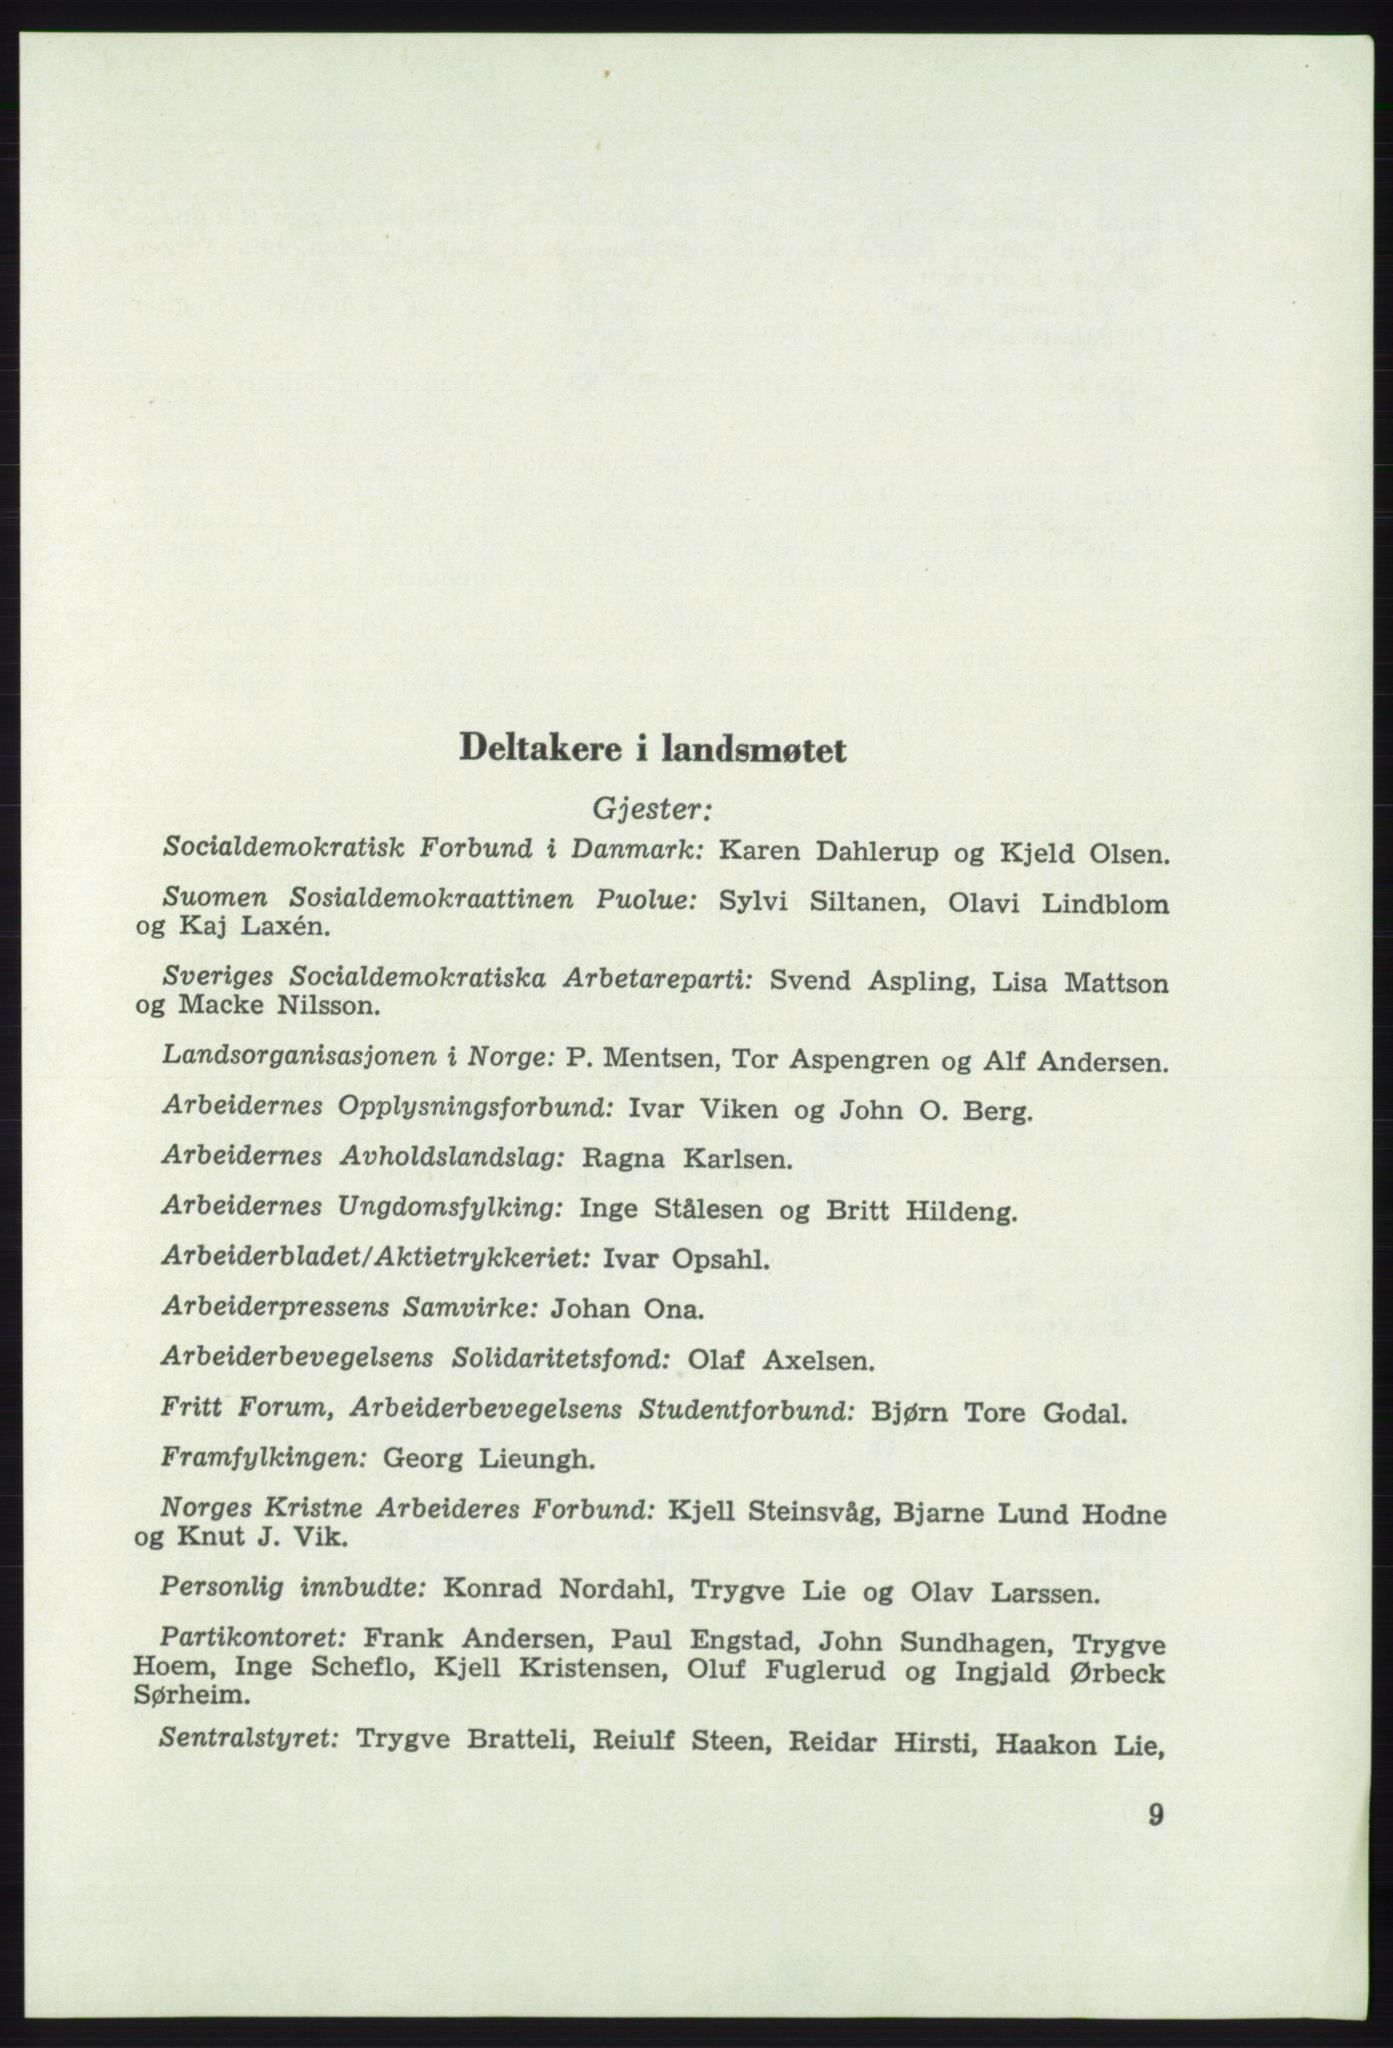 Det norske Arbeiderparti - publikasjoner, AAB/-/-/-: Protokoll over forhandlingene på det 41. ordinære landsmøte 21.-23. mai 1967 i Oslo, 1967, p. 9